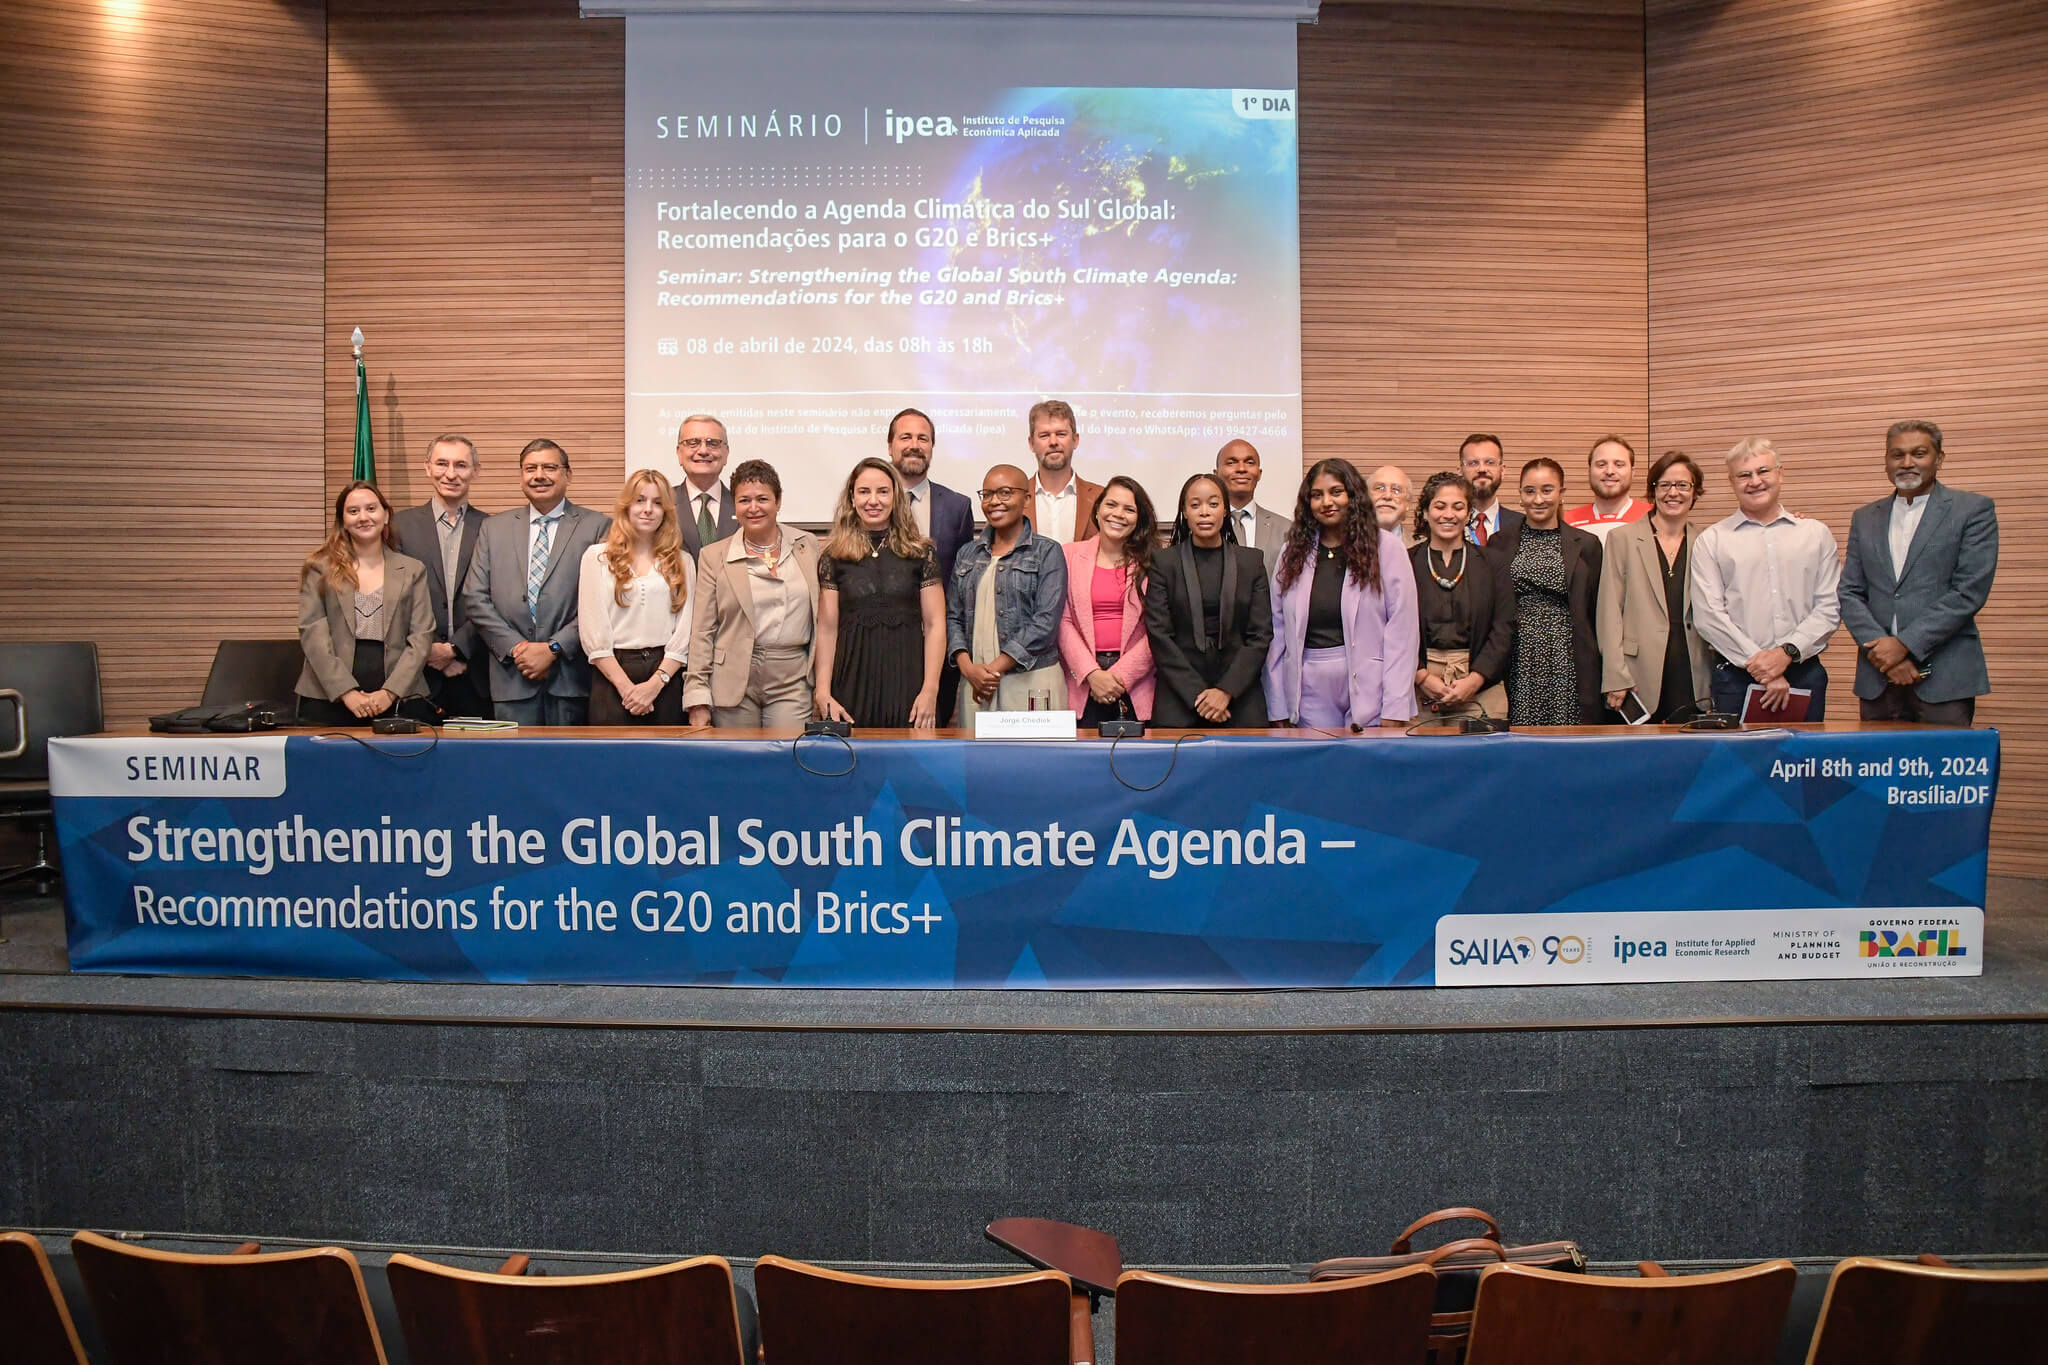 Seminário: Fortalecendo a Agenda Climática do Sul Global - Recomendações para o G20 e Brics+. Crédito: Divulgação Ipea/ Helio Montferre